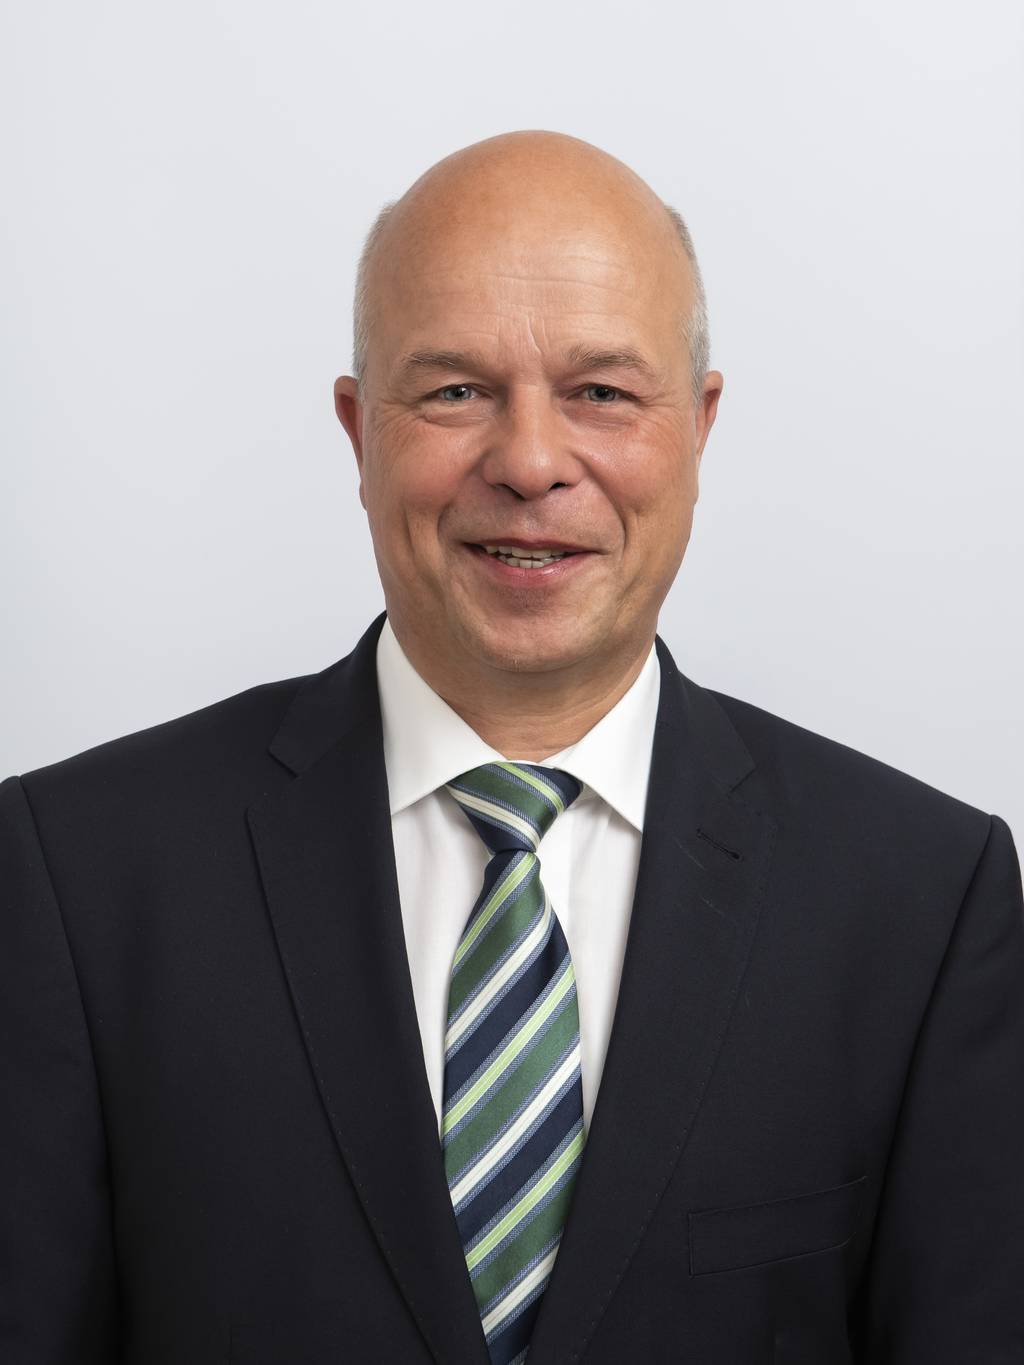 Jens-Peter Tzschoppe